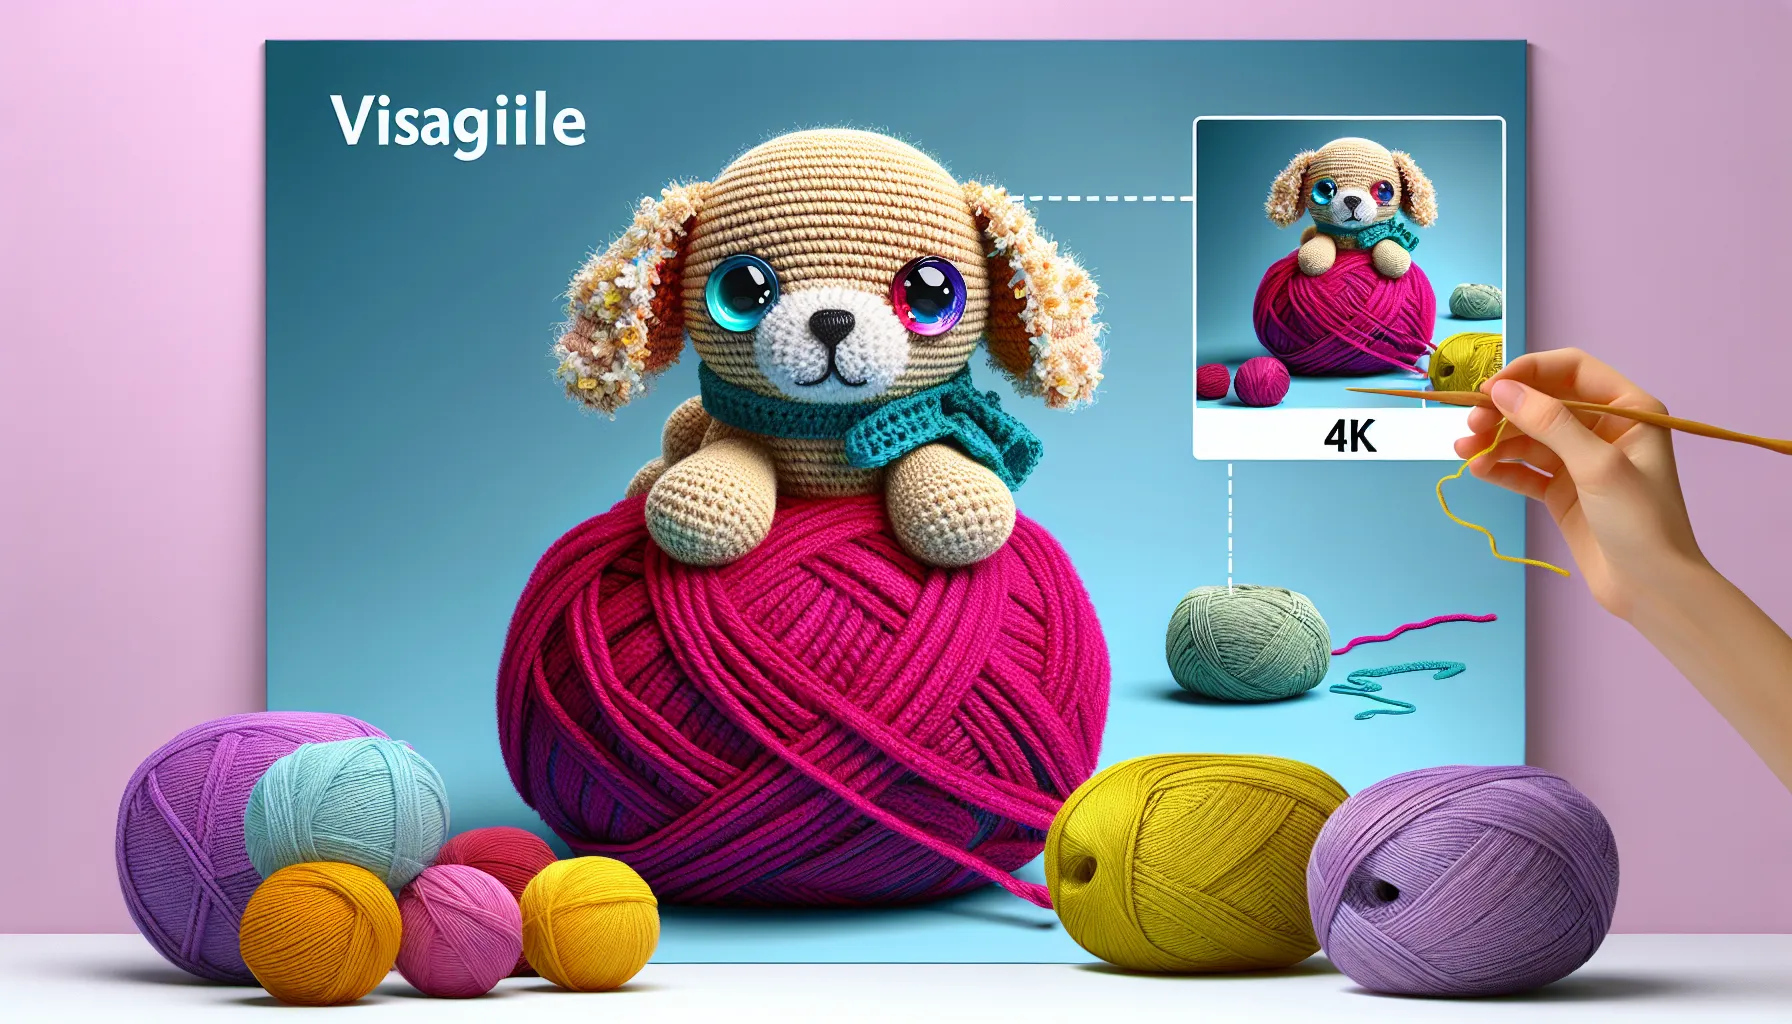 Passo a passo para fazer um cachorrinho de crochê:

Materiais necessários:
- Linha de crochê na cor desejada
- Agulha de crochê
- Enchimento de fibra sintética
- Olhos de segurança (opcional)
- Agulha de tapeçaria
- Tesoura

Instruções:

1. Comece fazendo um anel mágico com a linha de croch